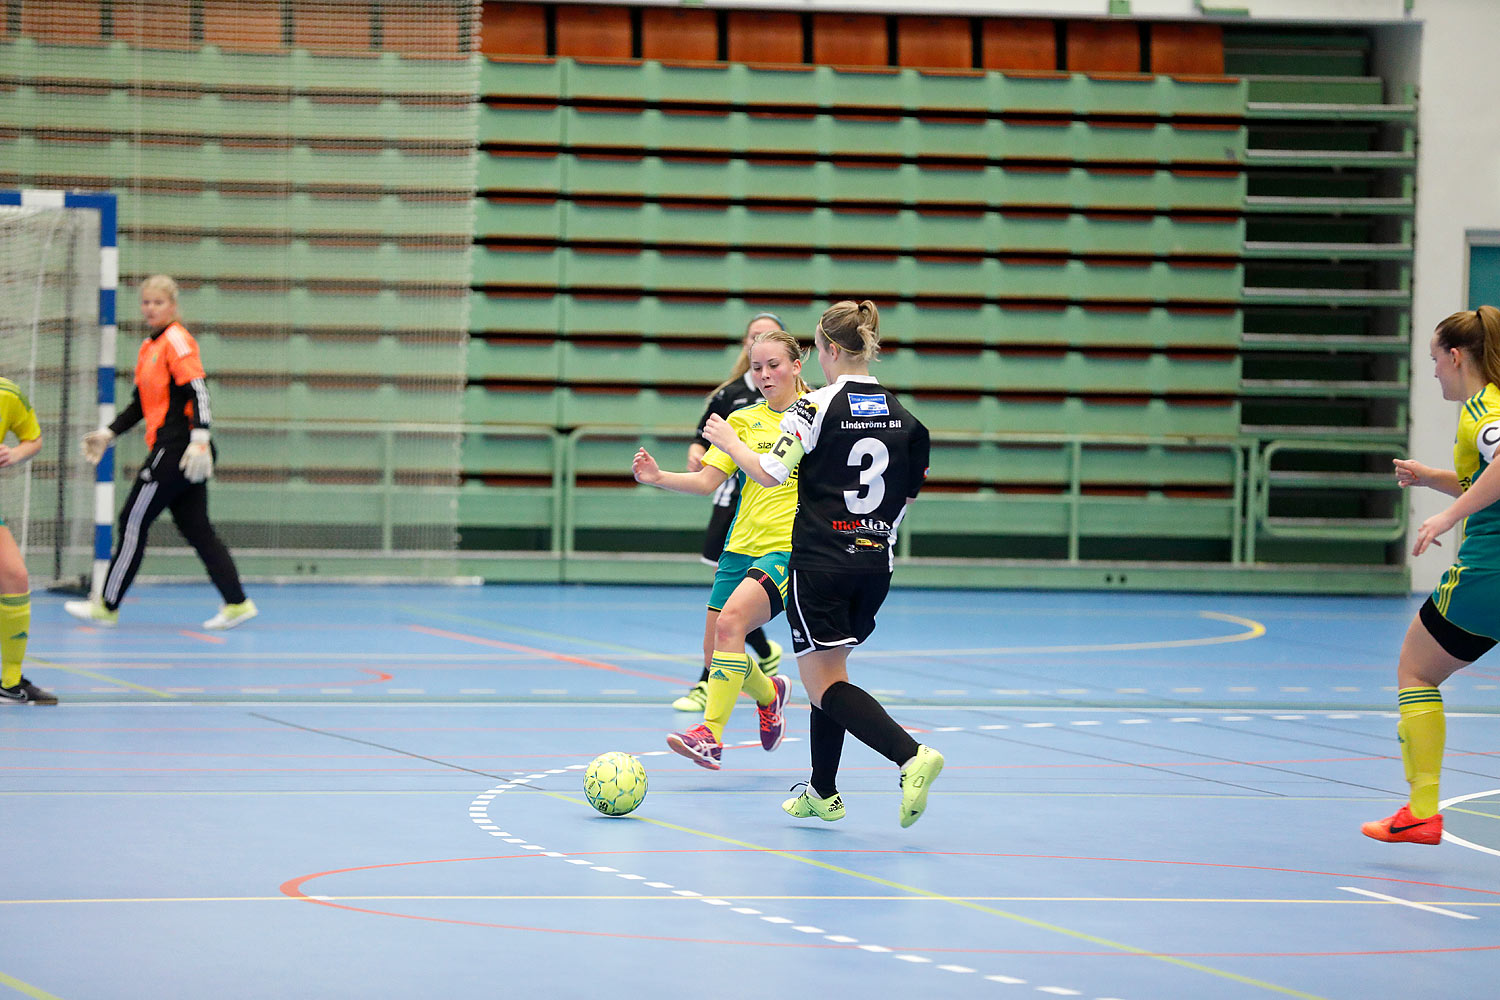 Skövde Futsalcup Damer Hertzöga BK 1-Skövde KIK,dam,Arena Skövde,Skövde,Sverige,Skövde Futsalcup 2016,Futsal,2016,141741